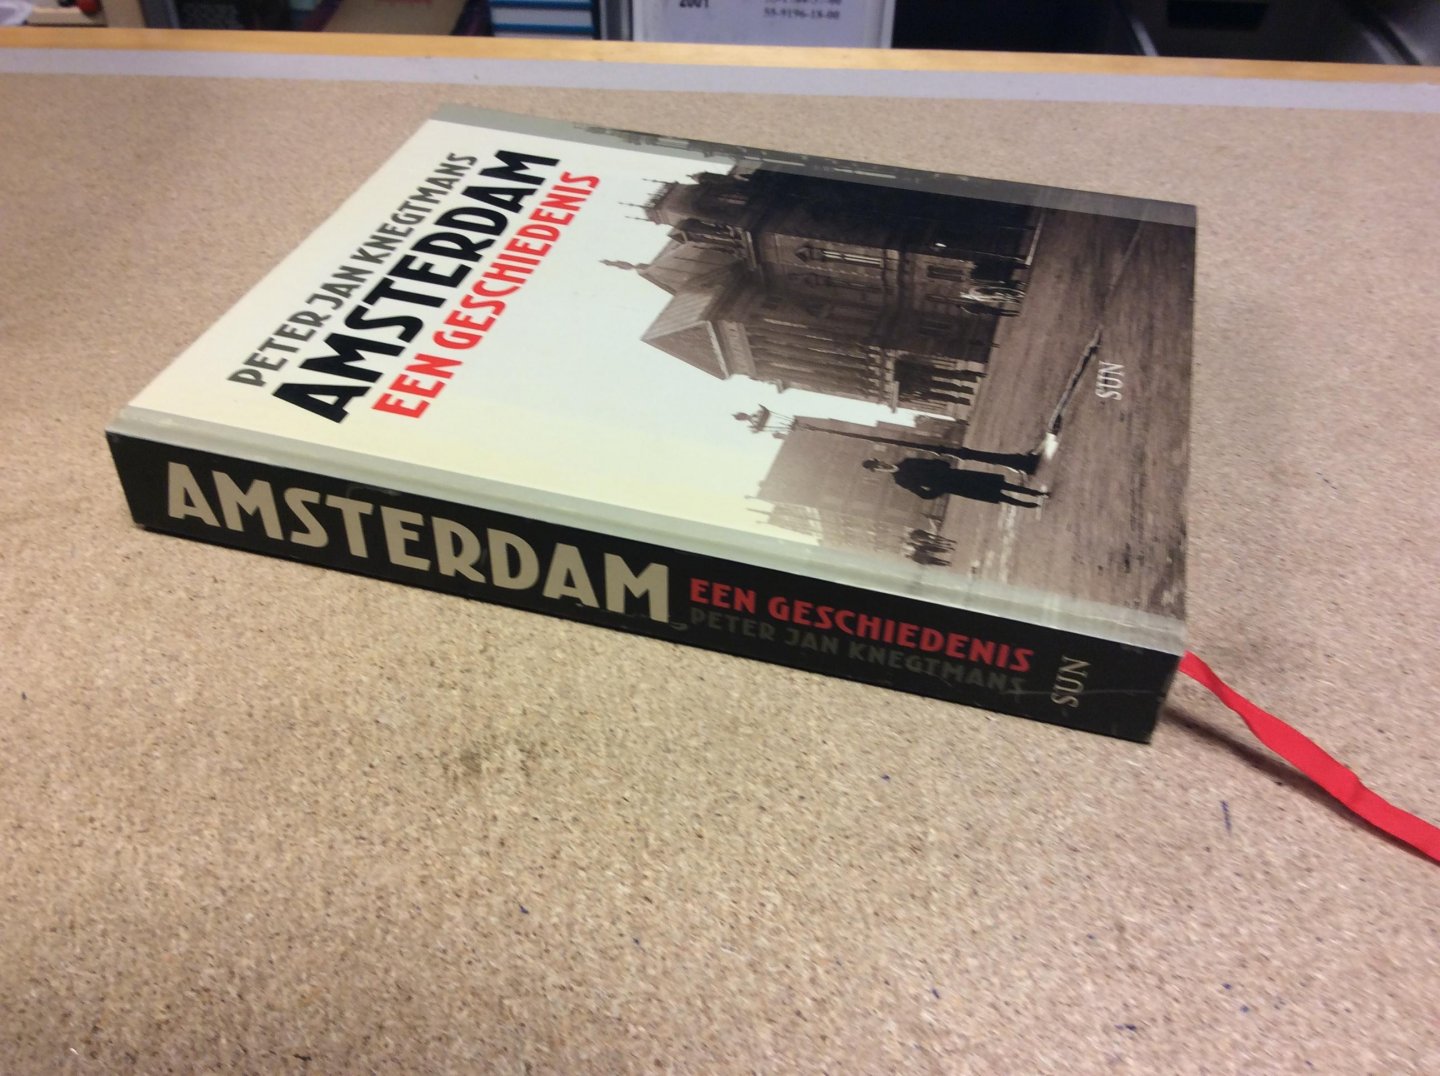 Knegtmans, Peter Jan - Amsterdam. Een geschiedenis